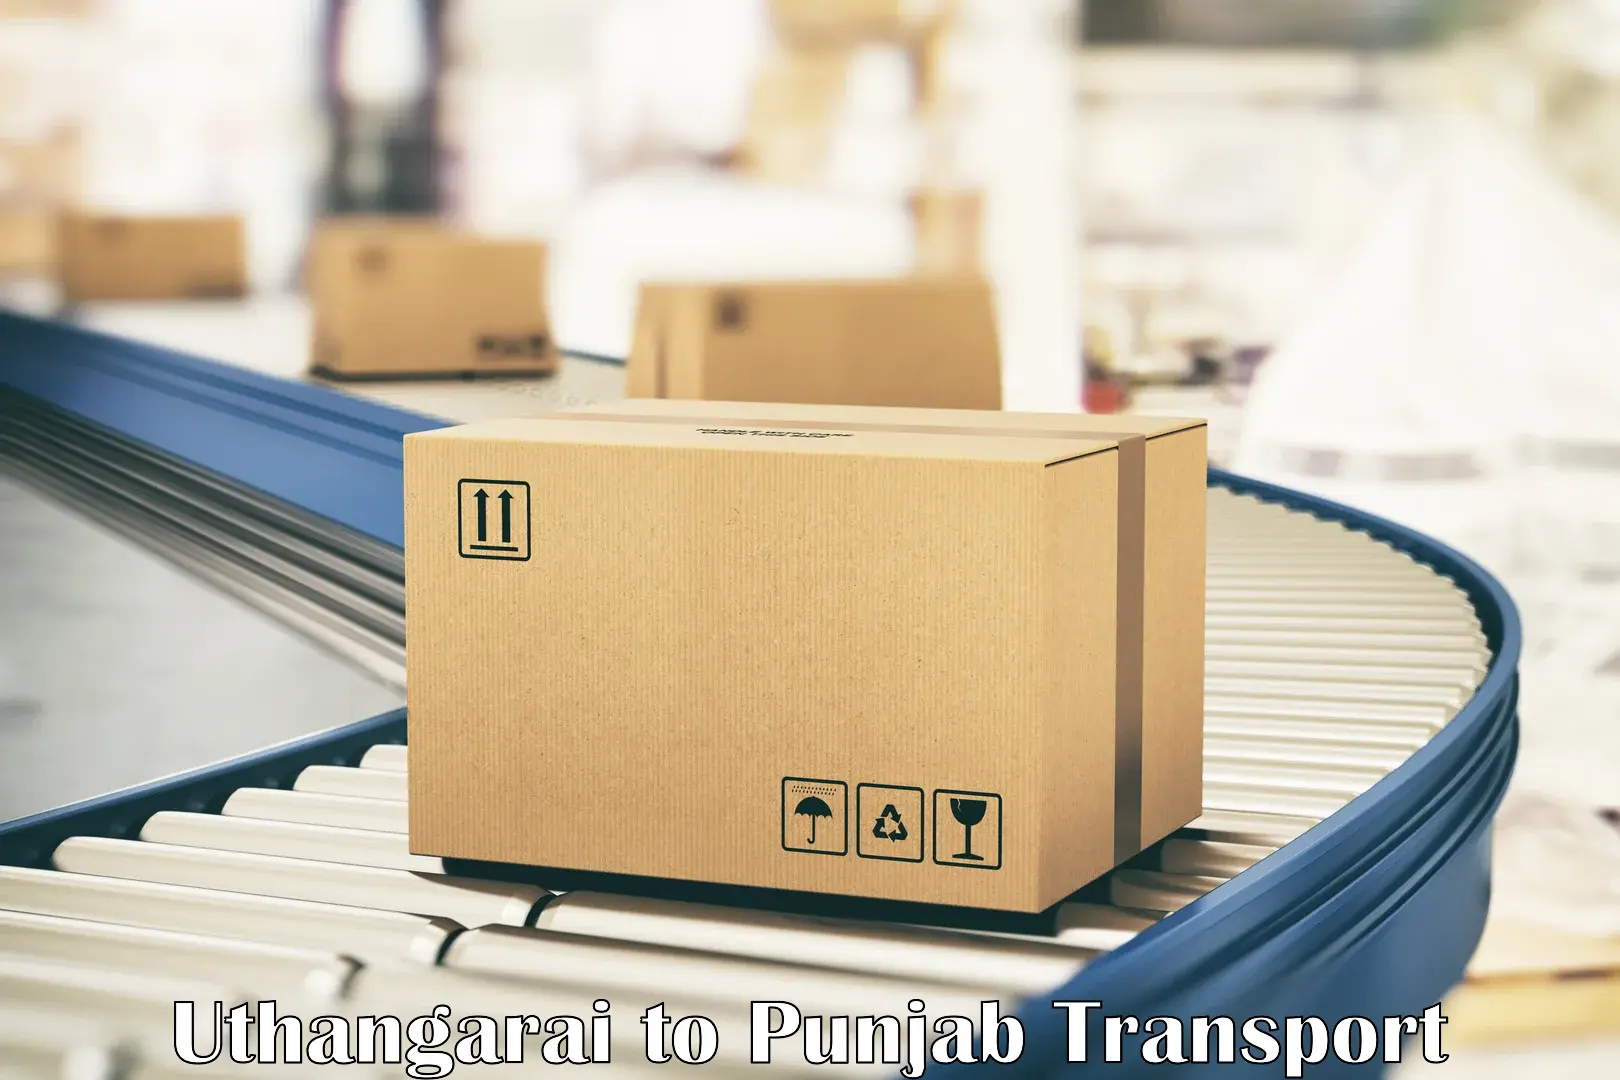 Online transport service Uthangarai to Punjab